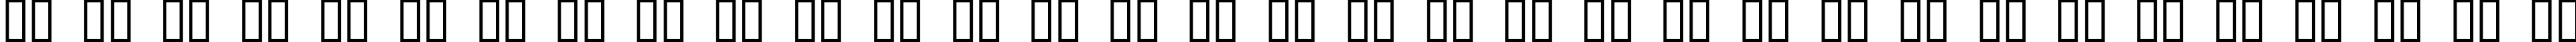 Пример написания русского алфавита шрифтом ZeroHour